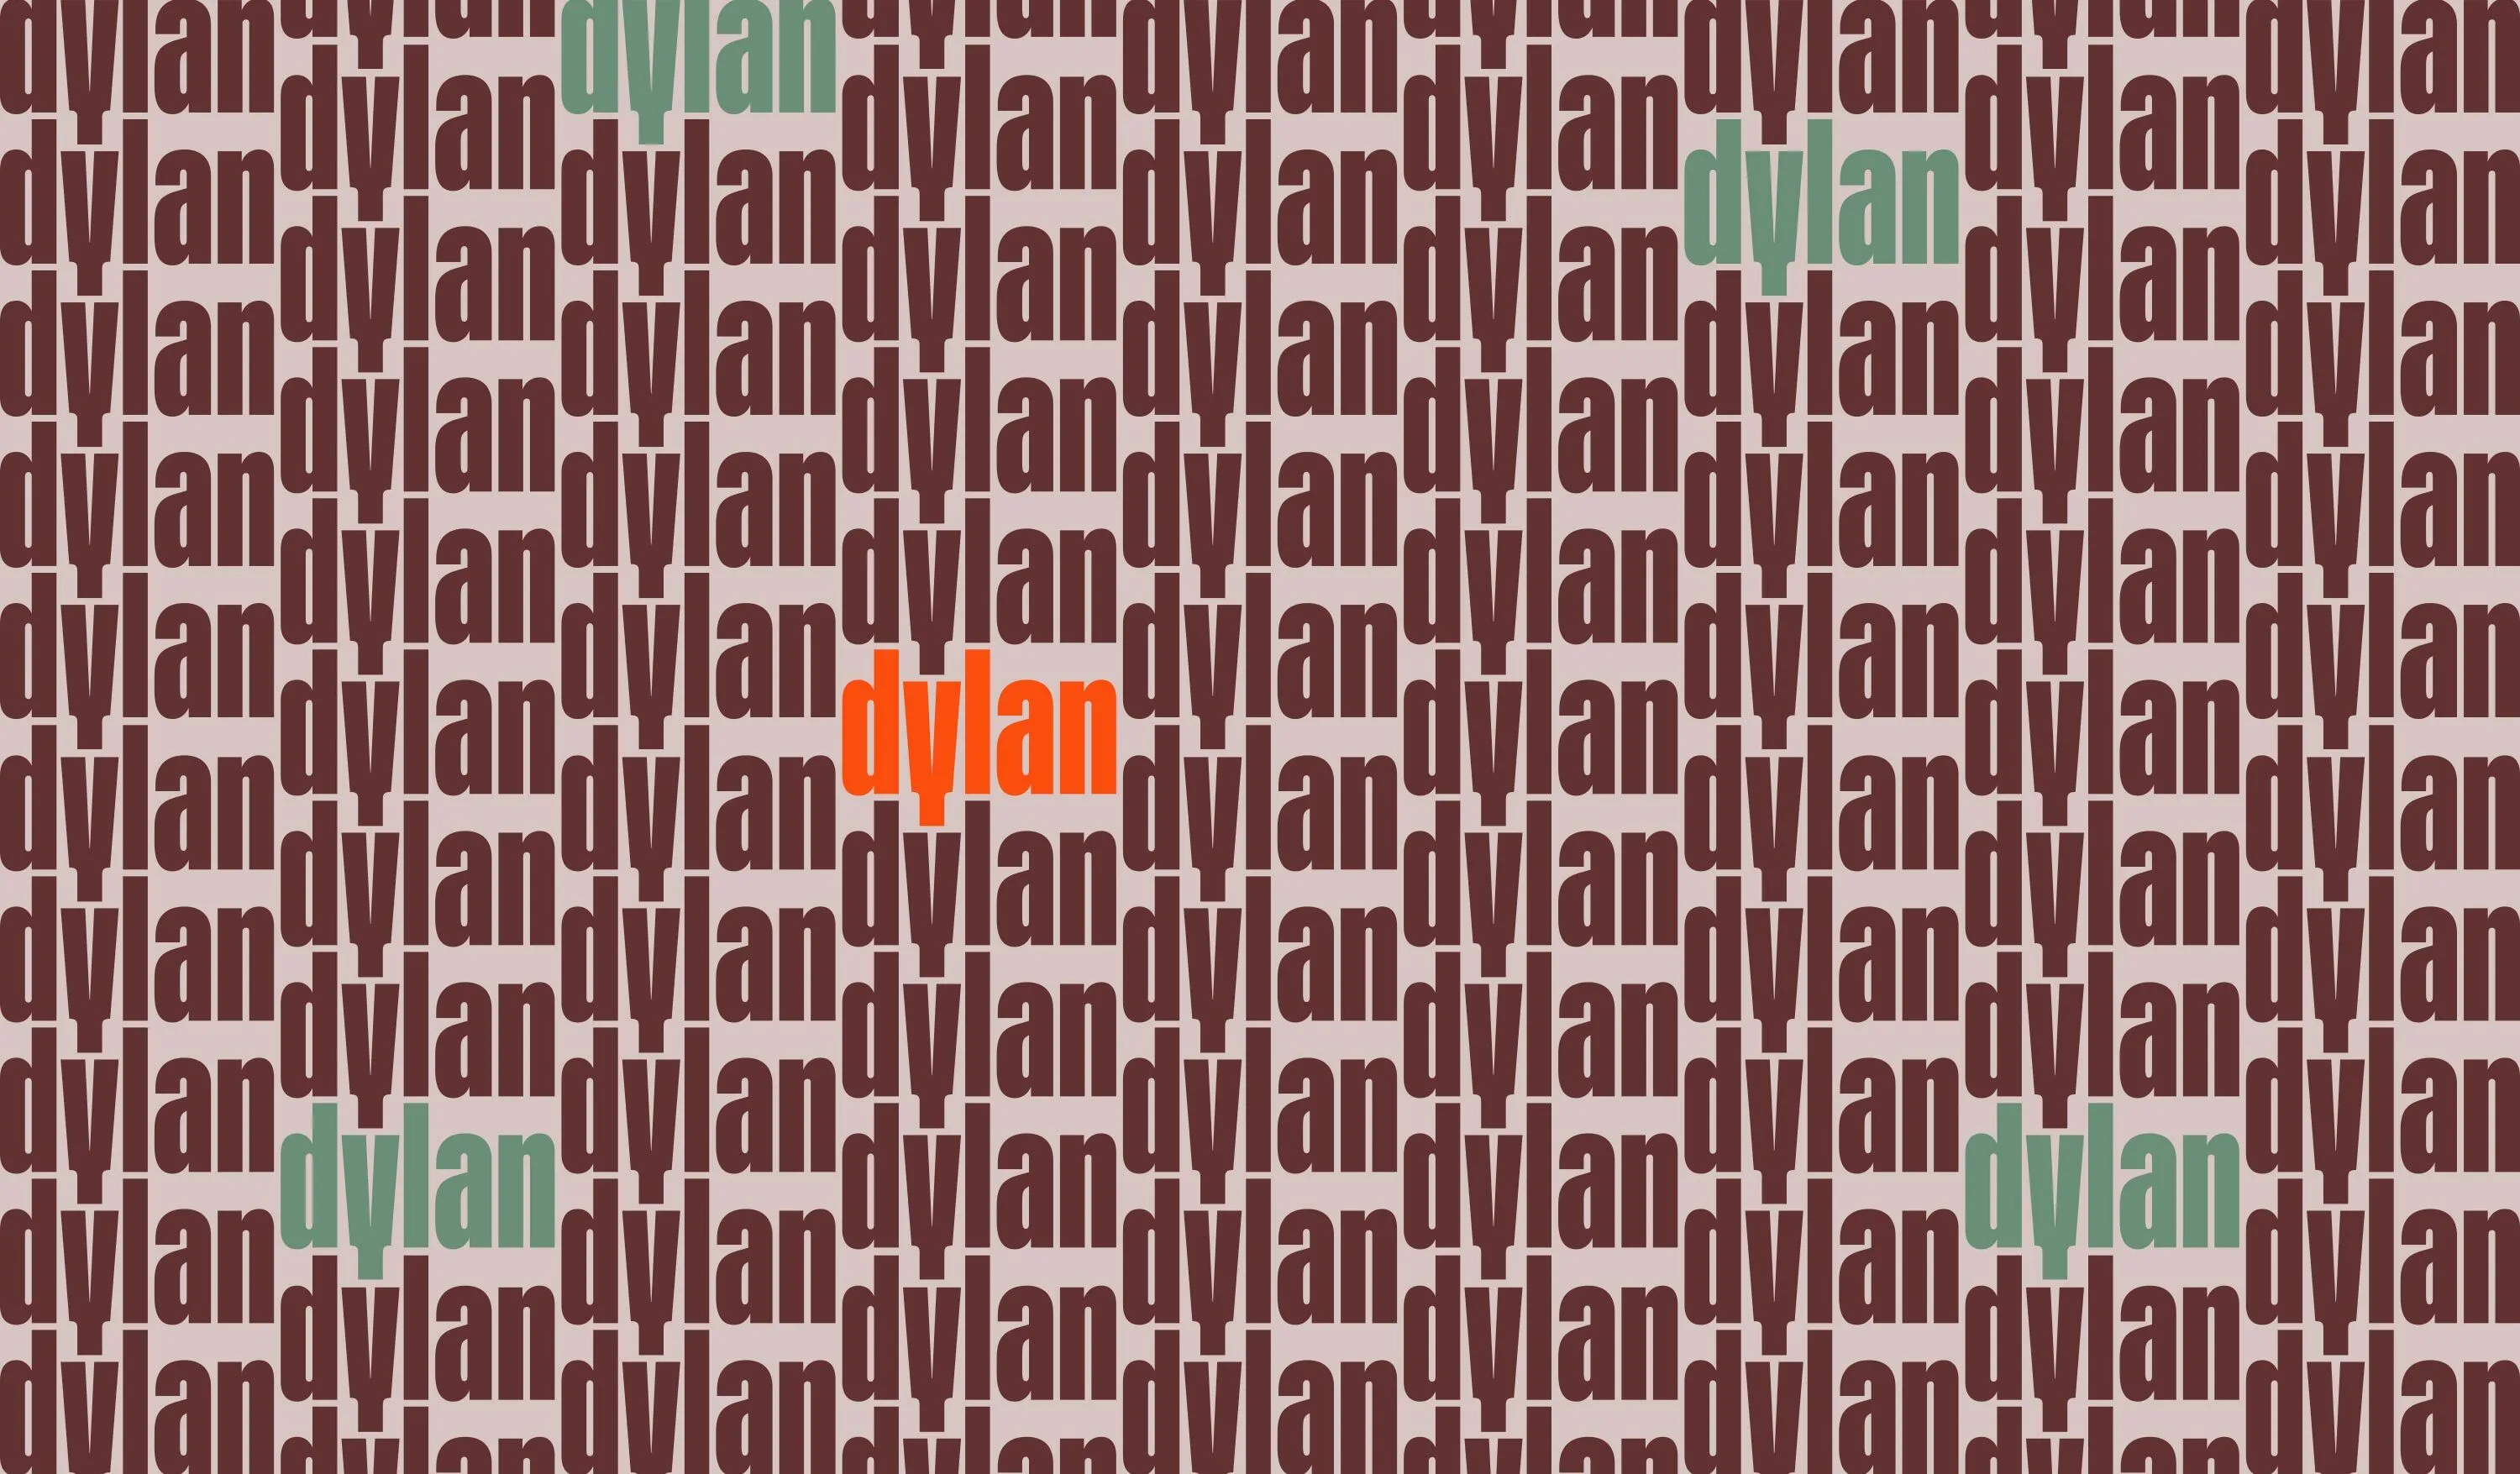 Span The Dylan Pattern2